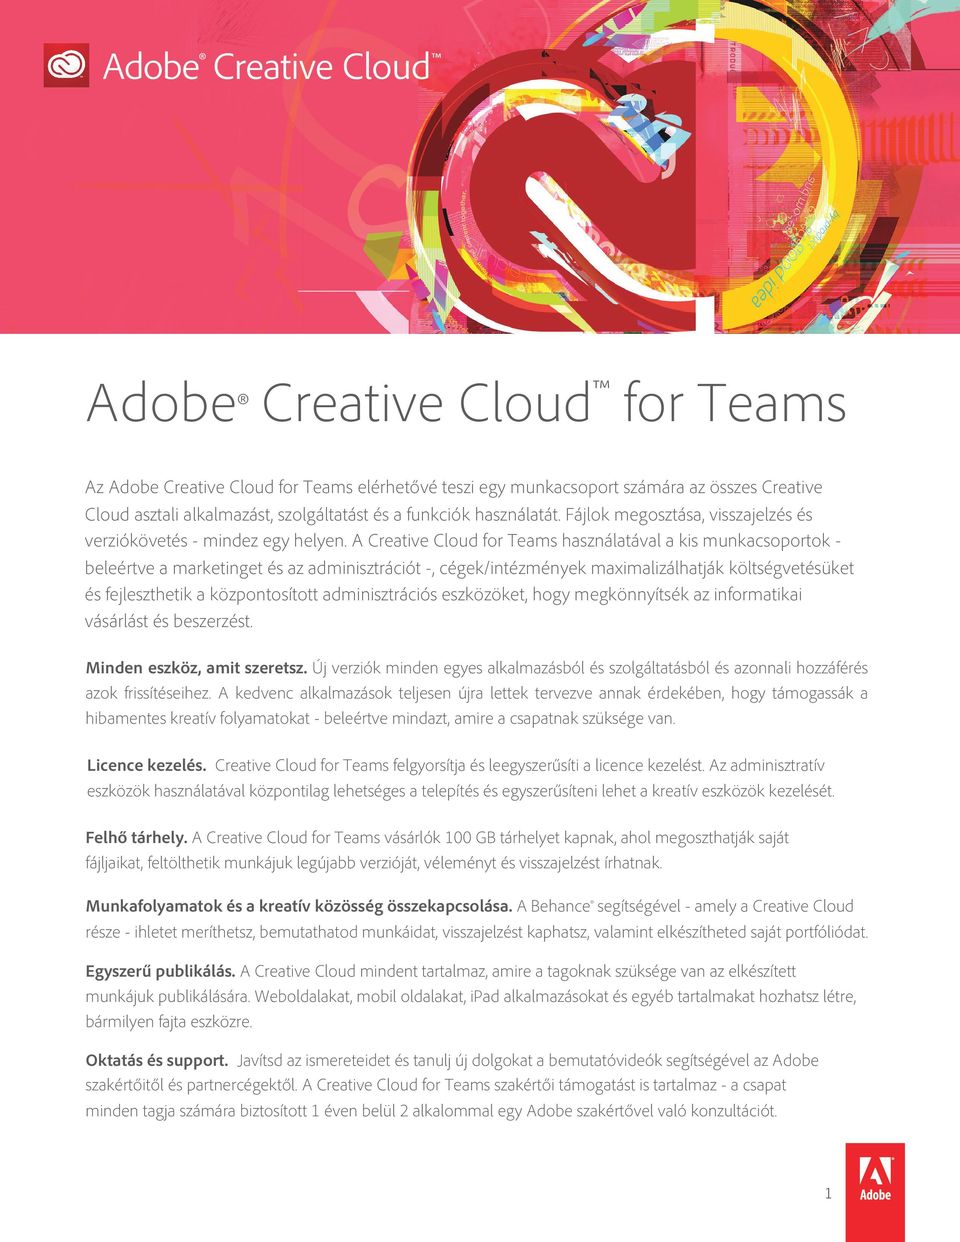 A Creative Cloud for Teams használatával a kis munkacsoportok - beleértve a marketinget és az adminisztrációt -, cégek/intézmények maximalizálhatják költségvetésüket és fejleszthetik a központosított